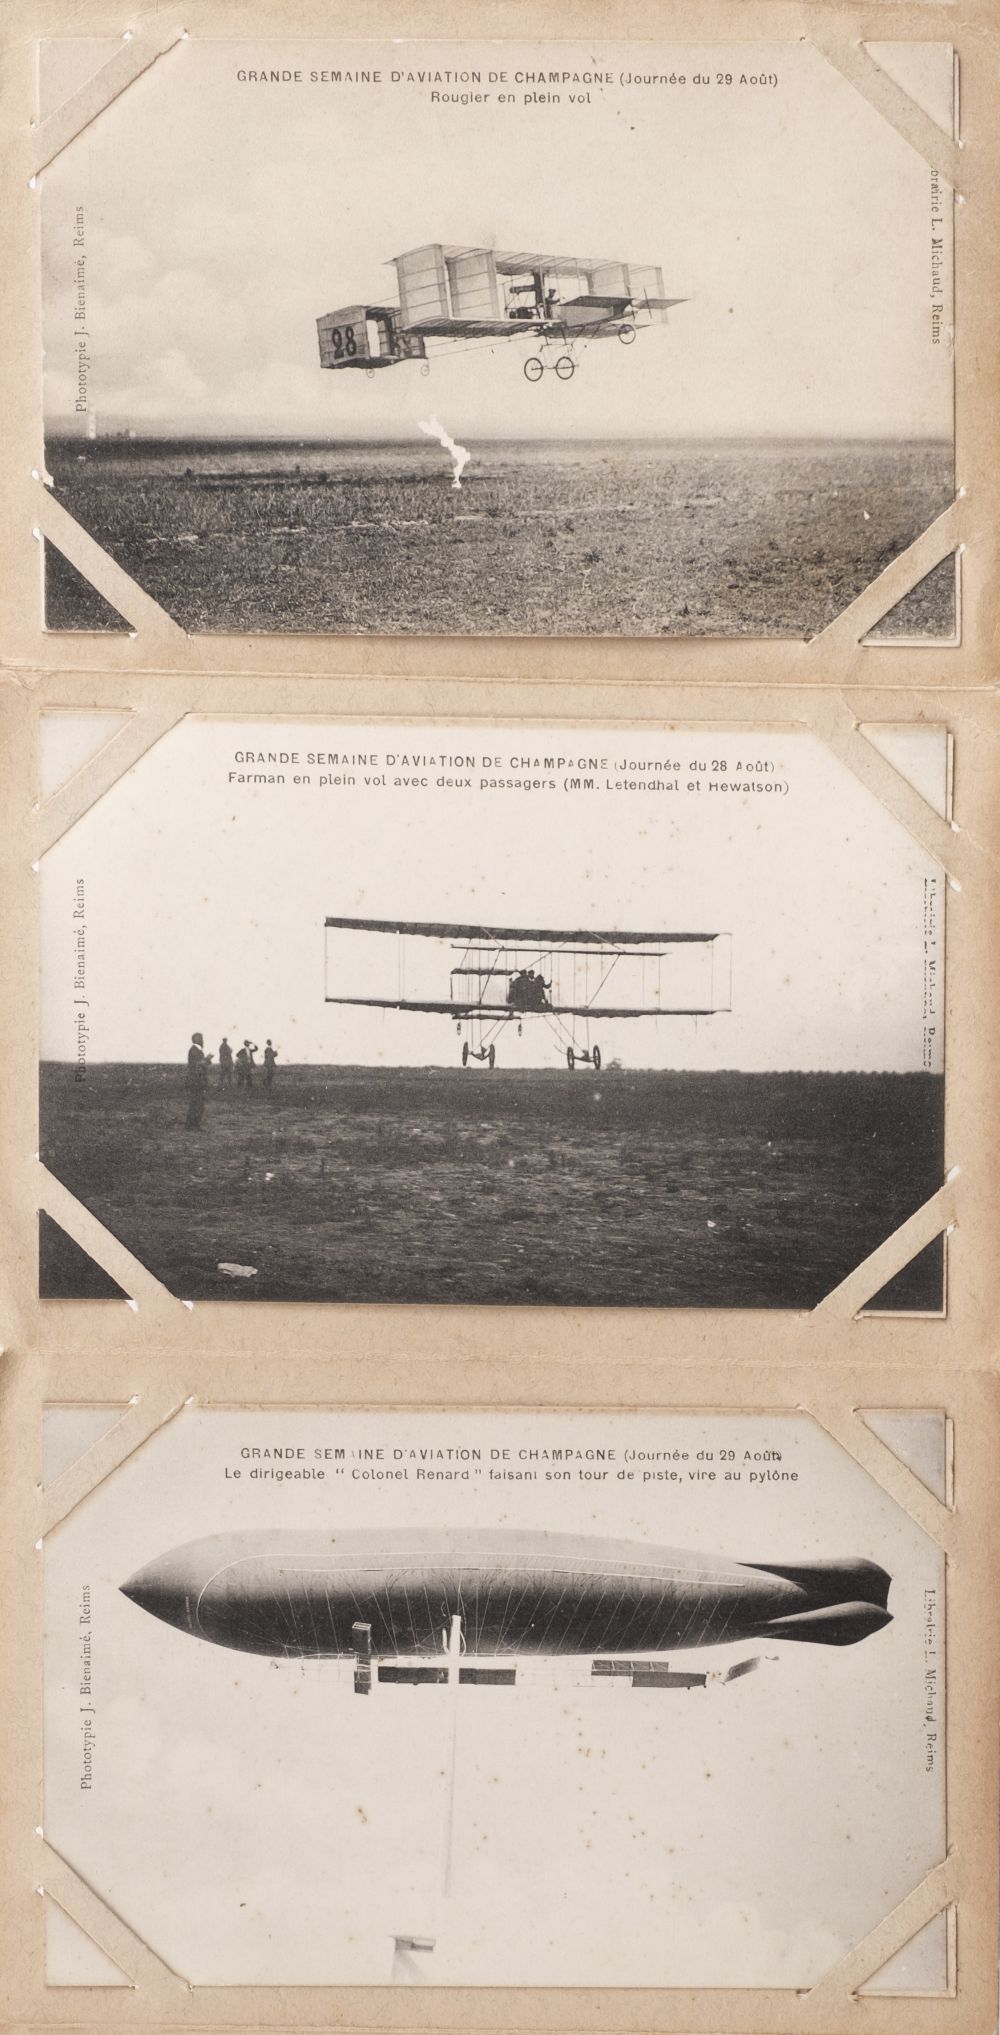 Pioneer Aviation. Rheims Air Meet, August 1909